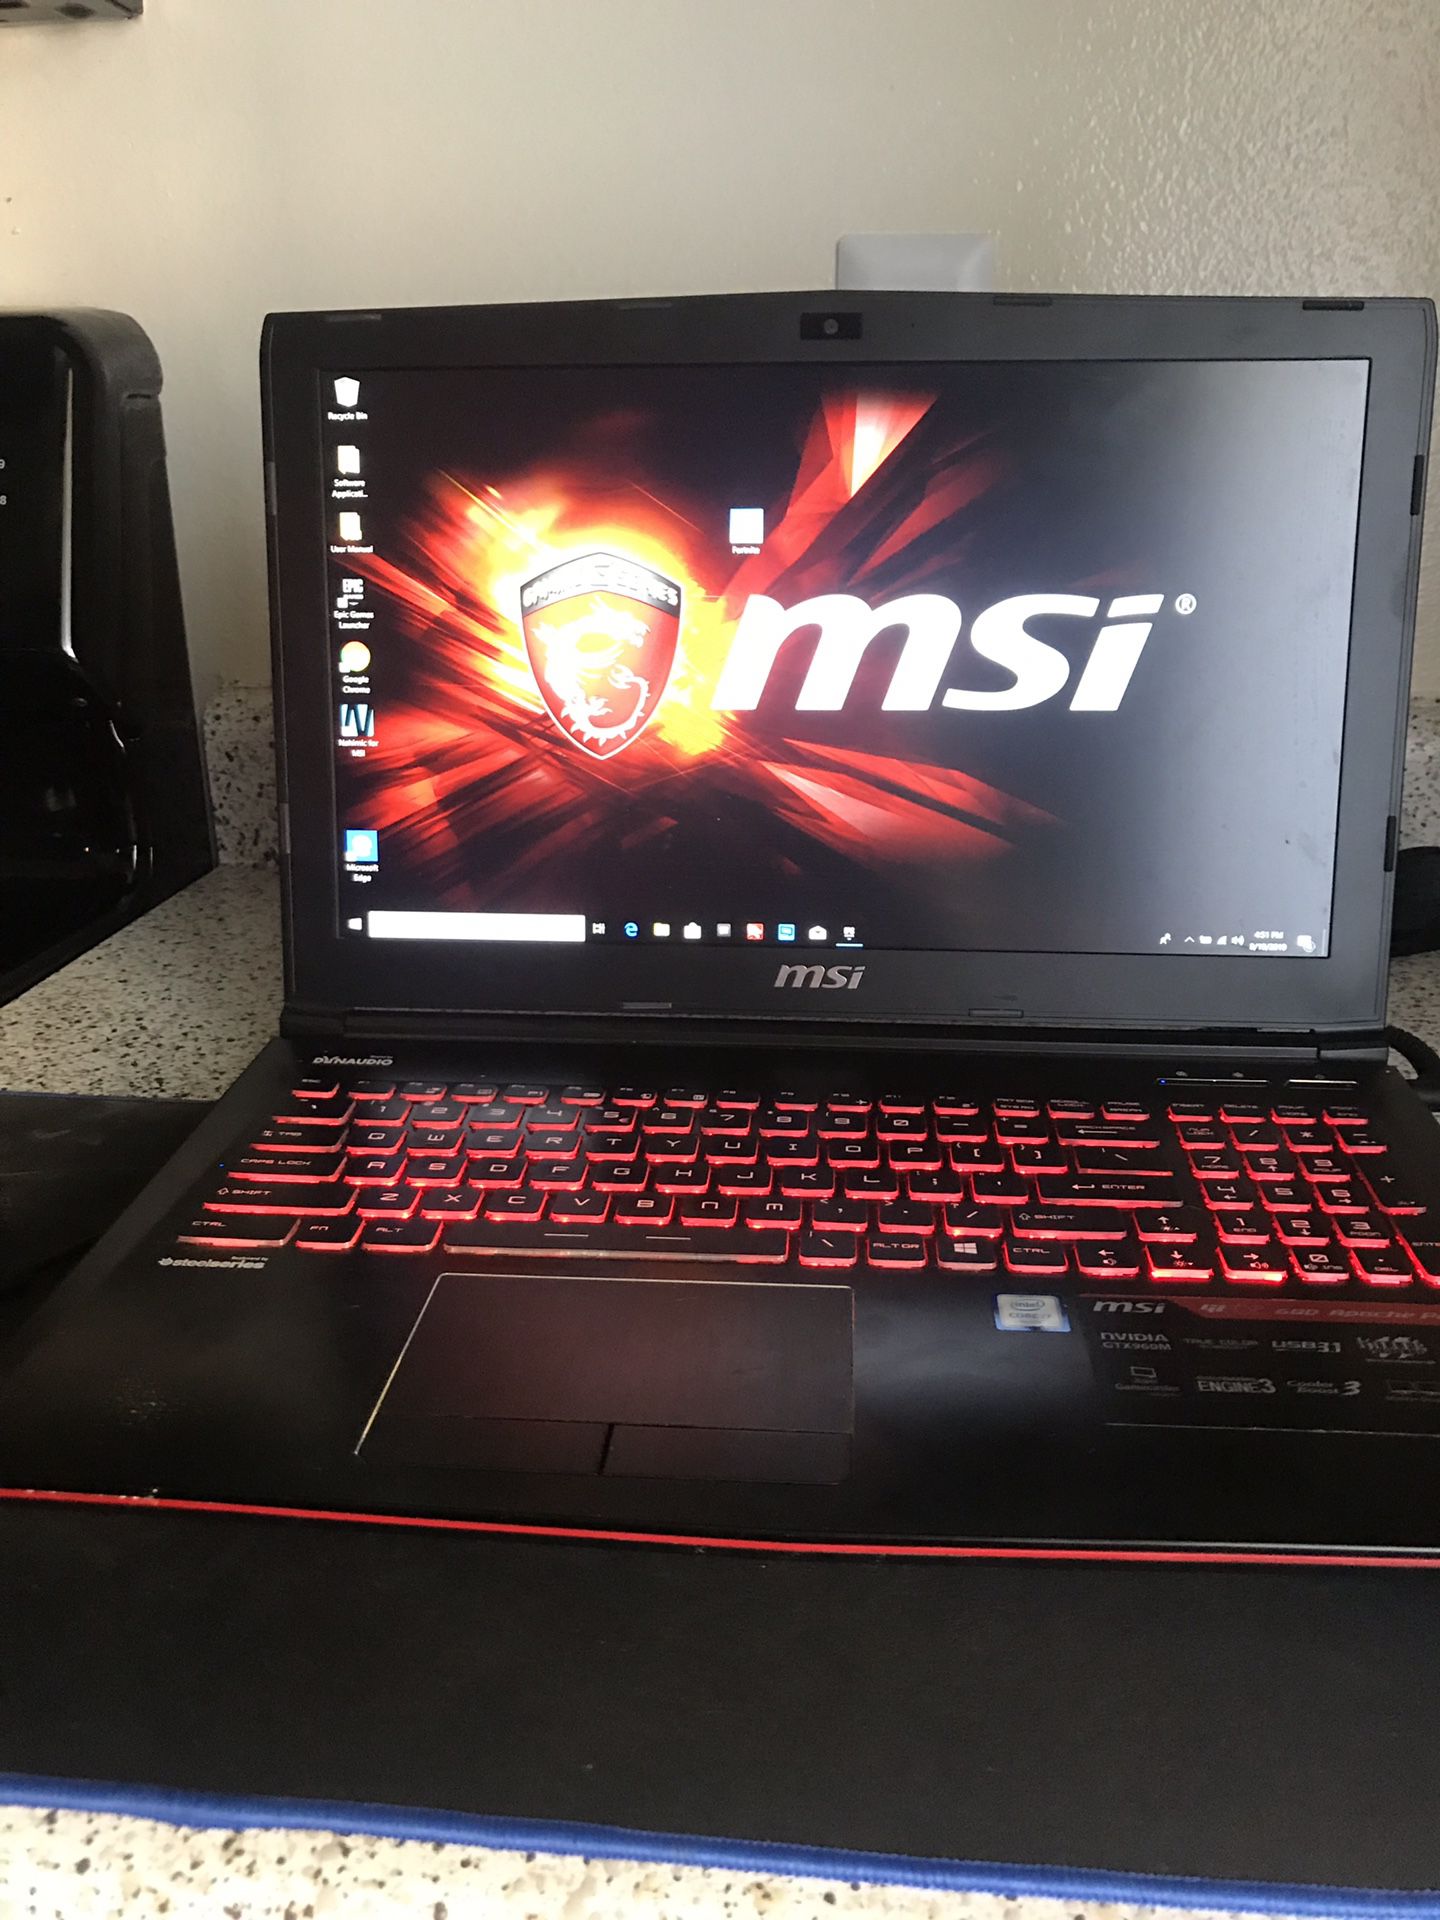 MSI gaming laptop